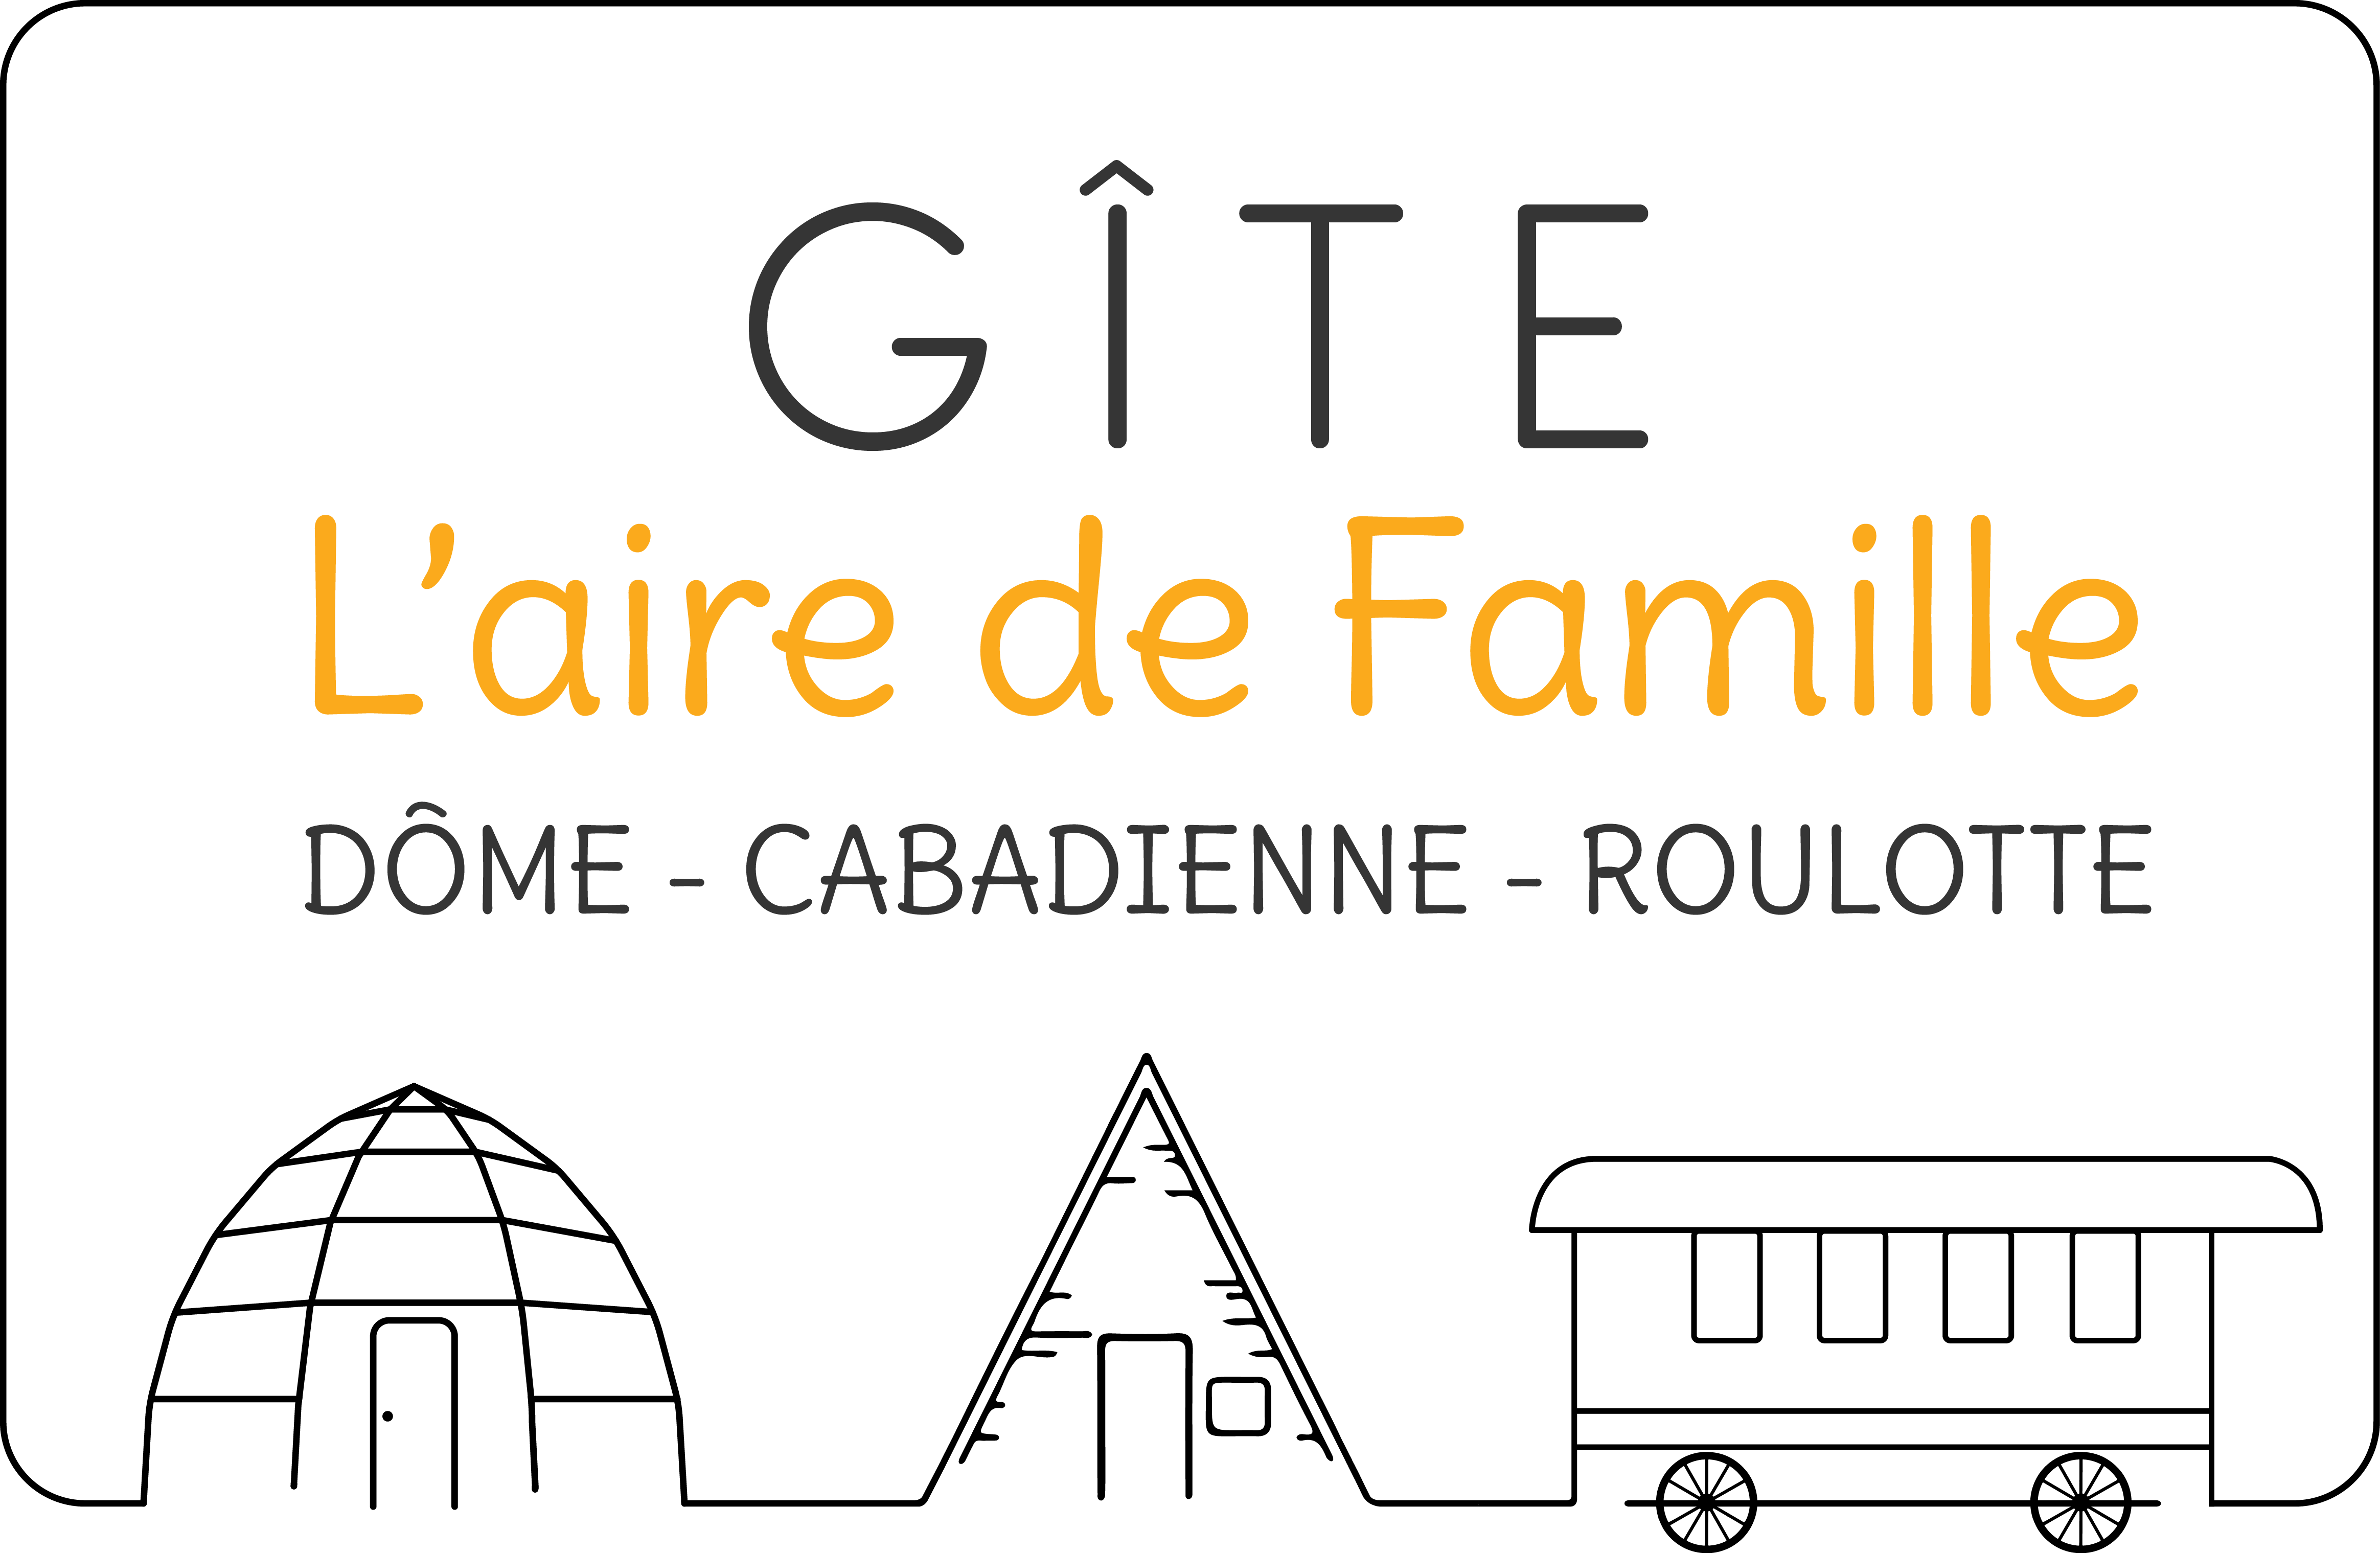 Logo laire de famille